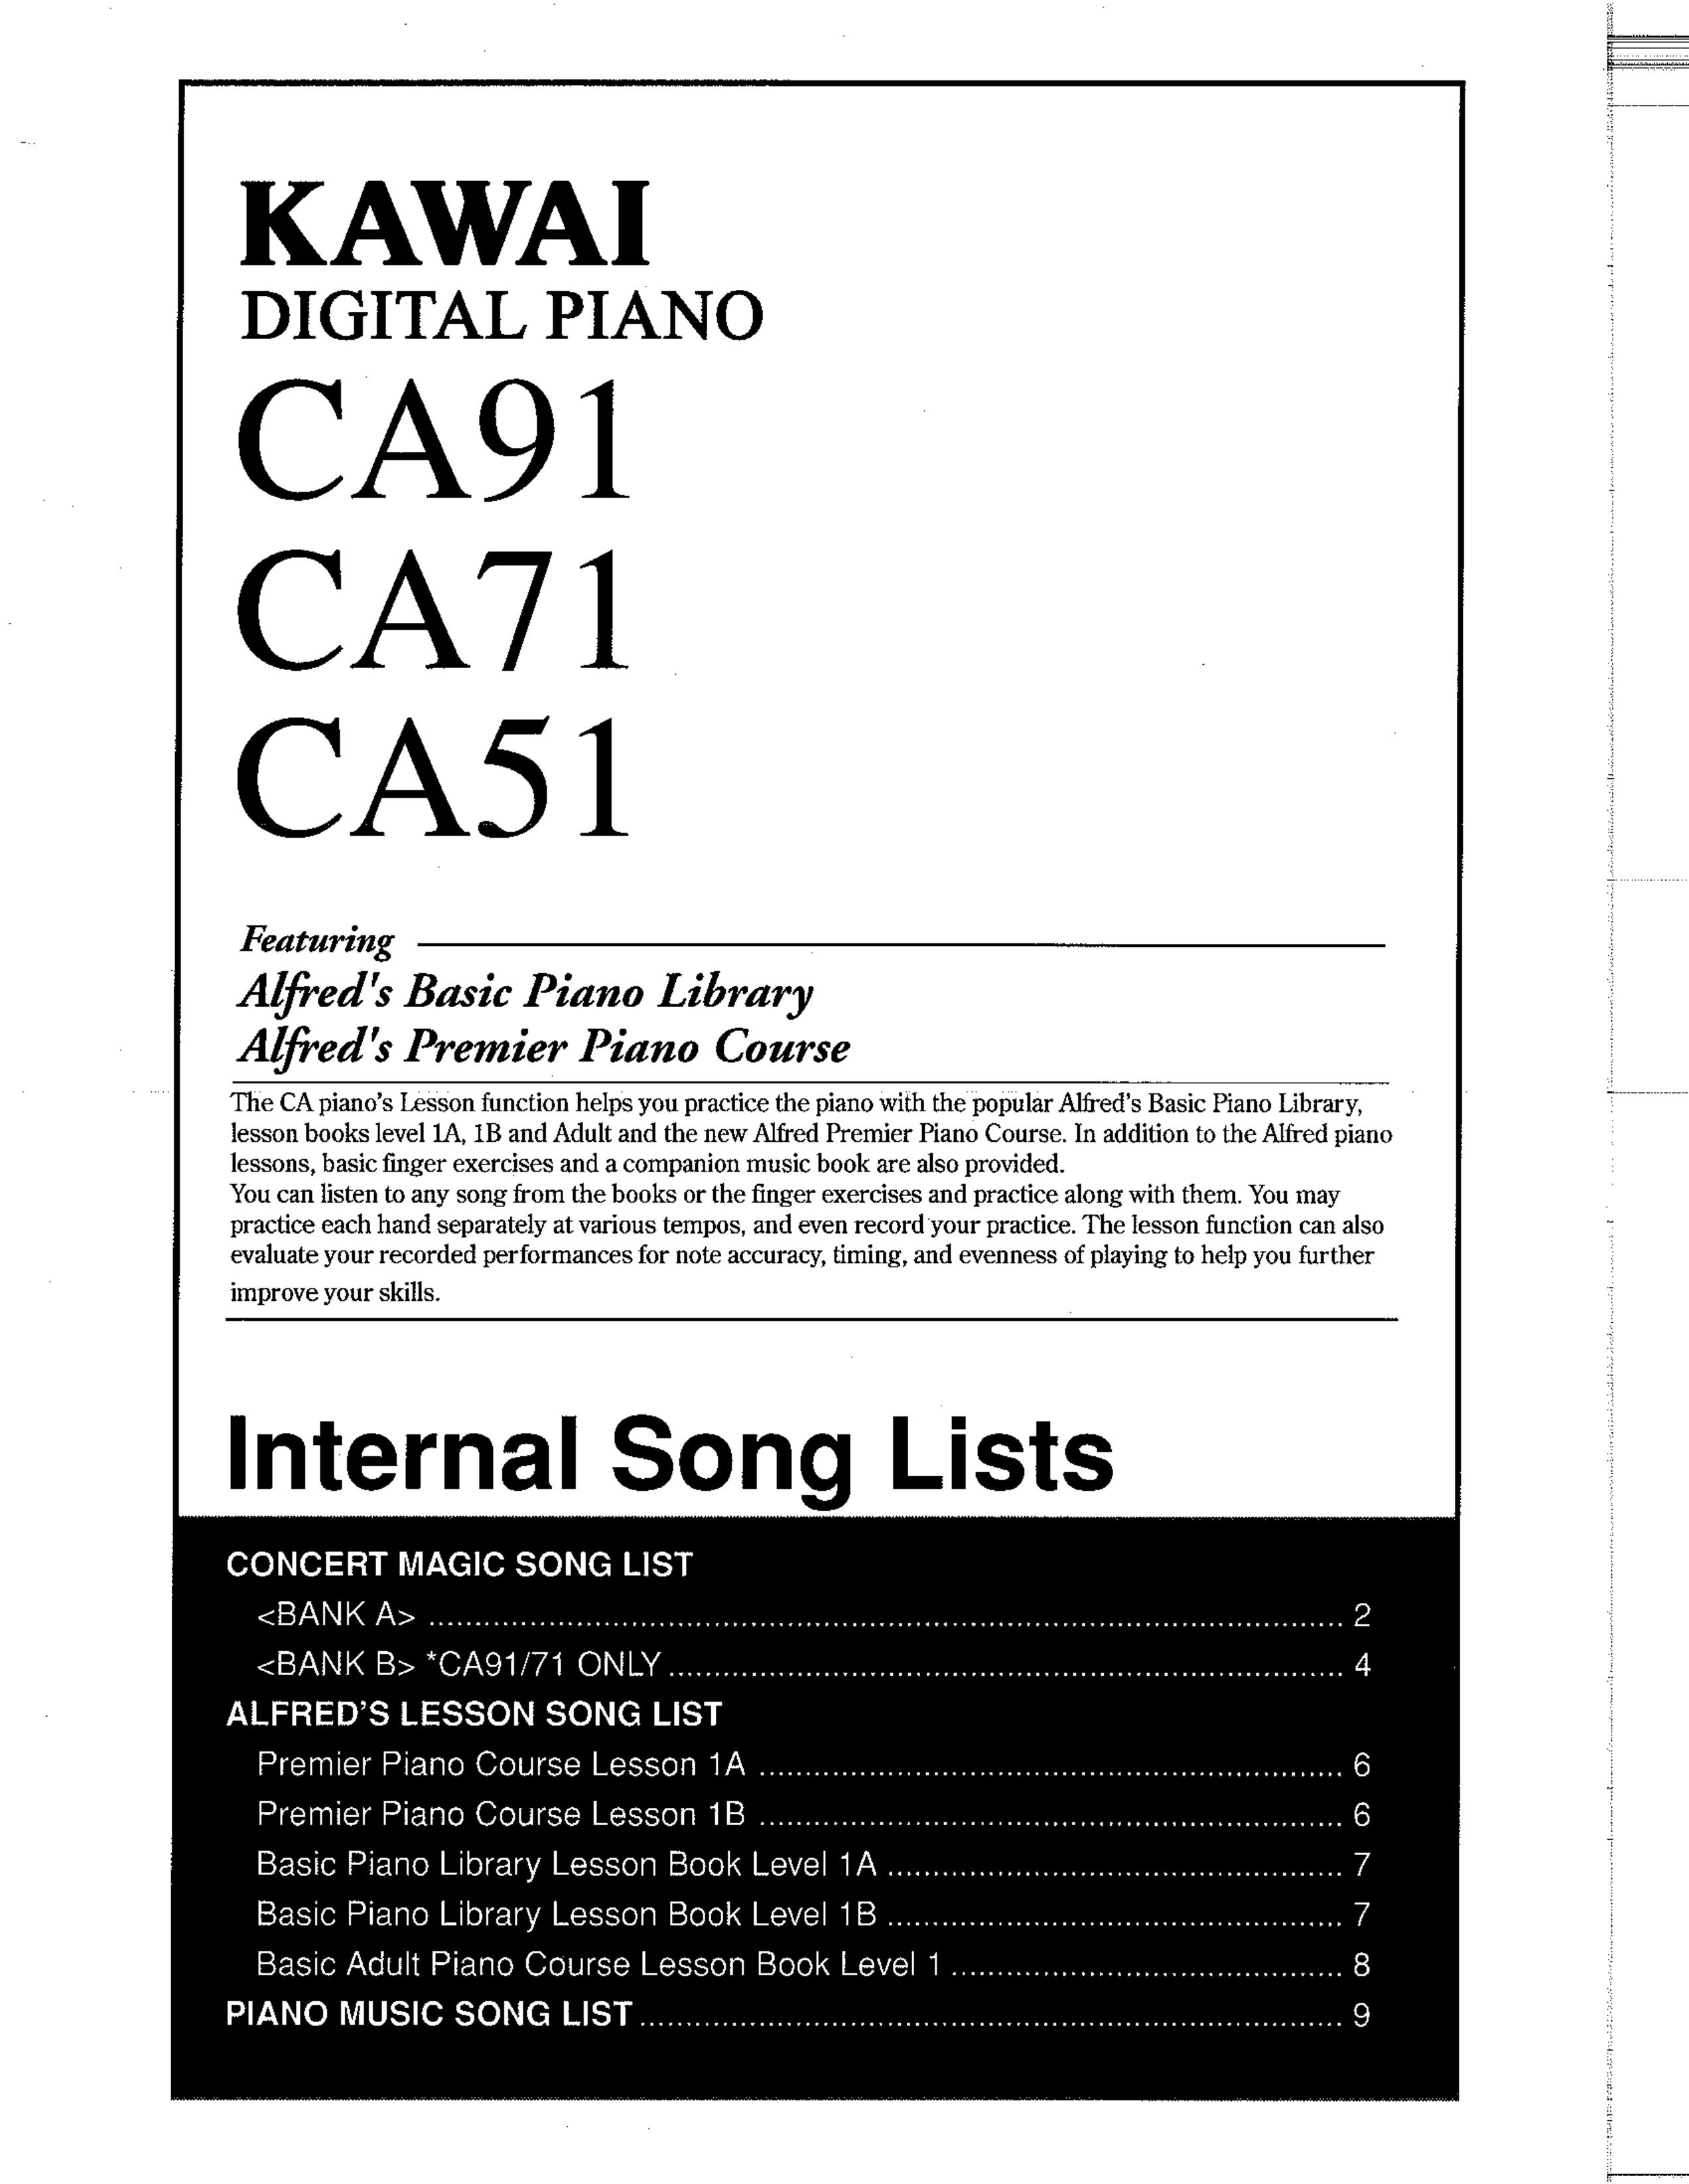 Kawai CA51 Electronic Keyboard User Manual